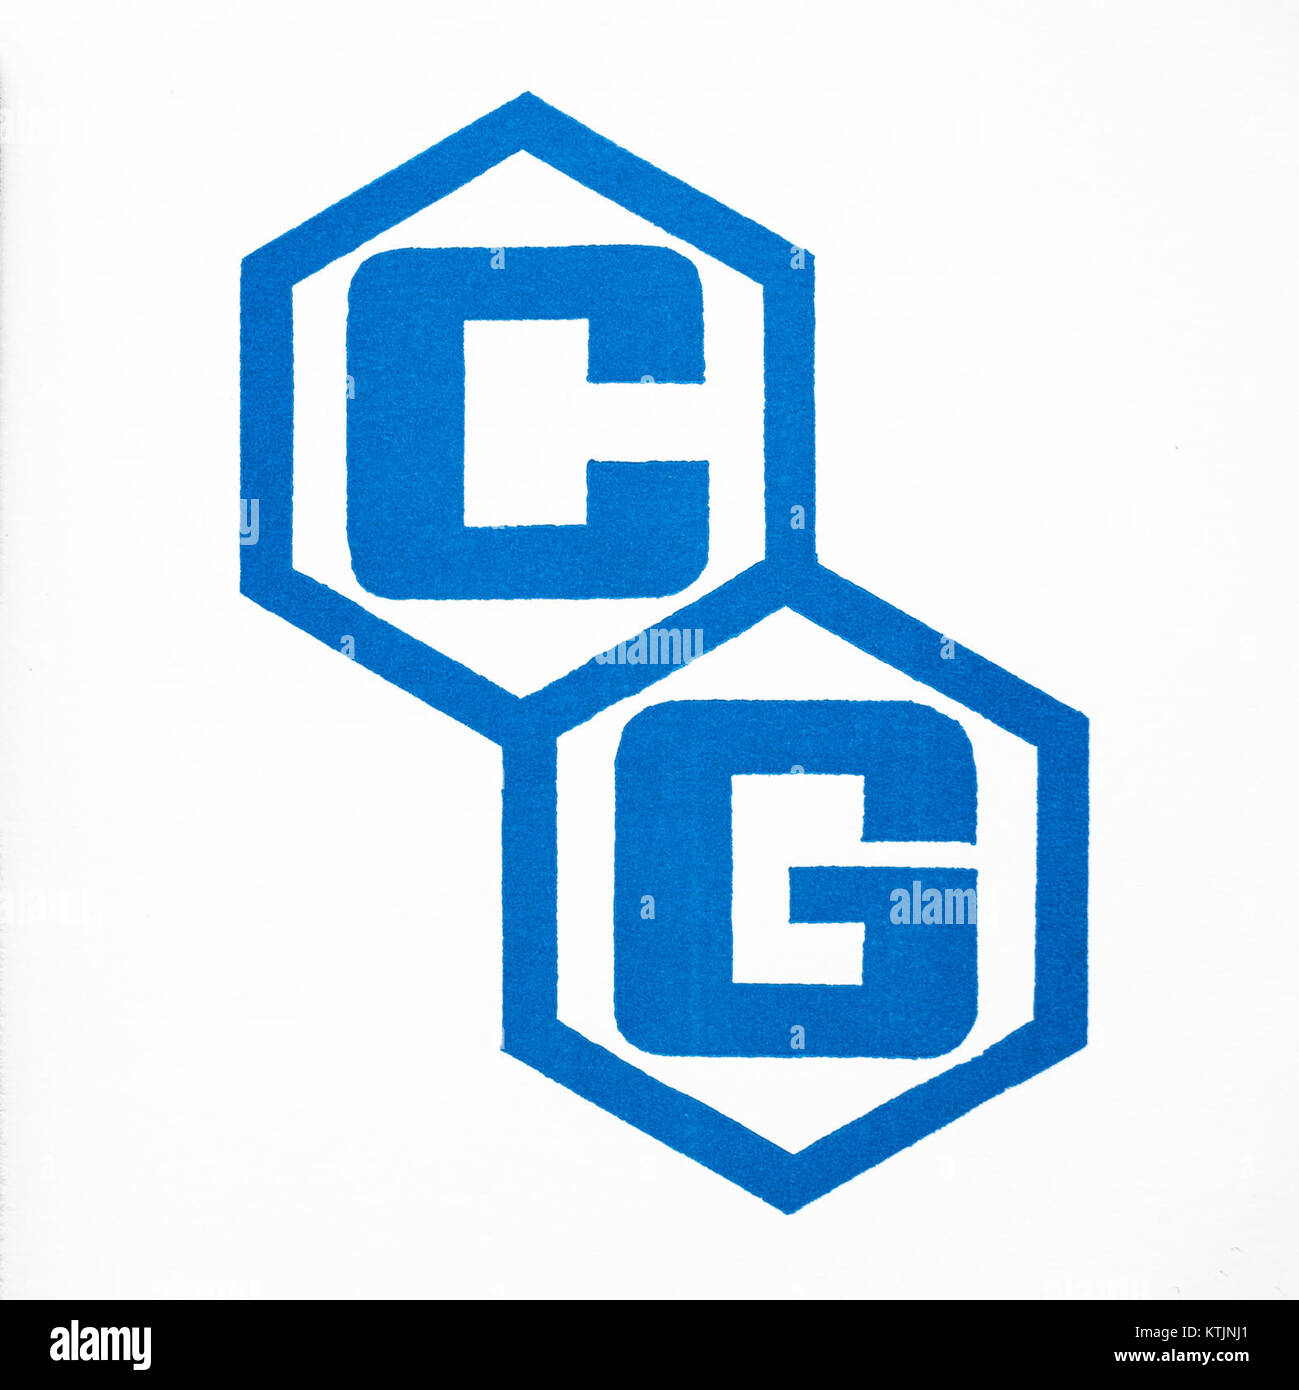 CG Logo FullSize 2534 px 300 dpi sRGB Stockfoto